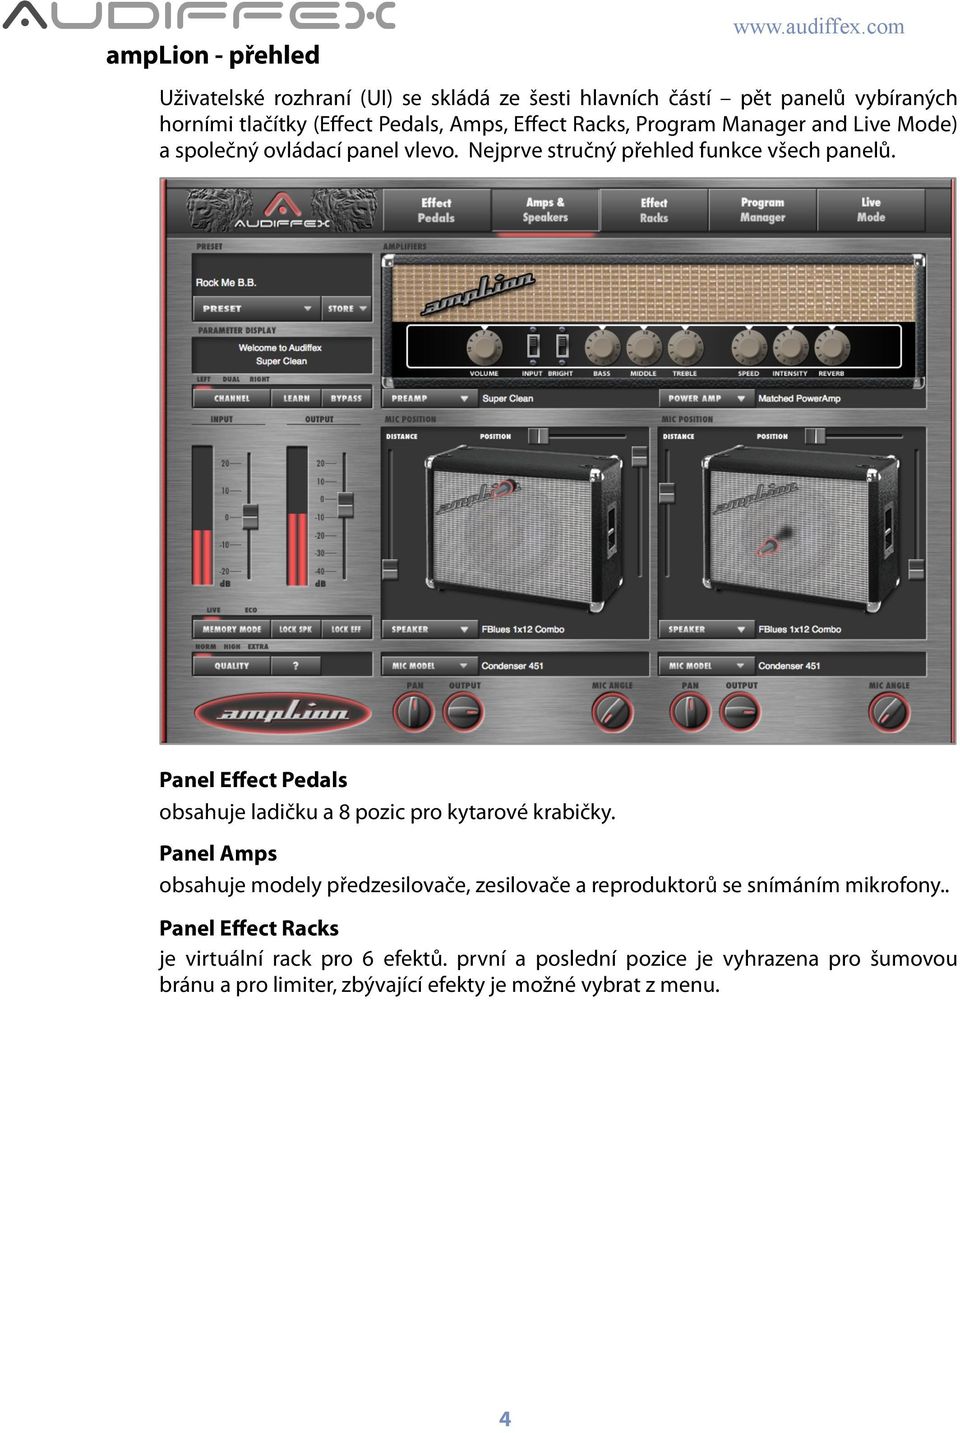 Panel Effect Pedals obsahuje ladičku a 8 pozic pro kytarové krabičky.